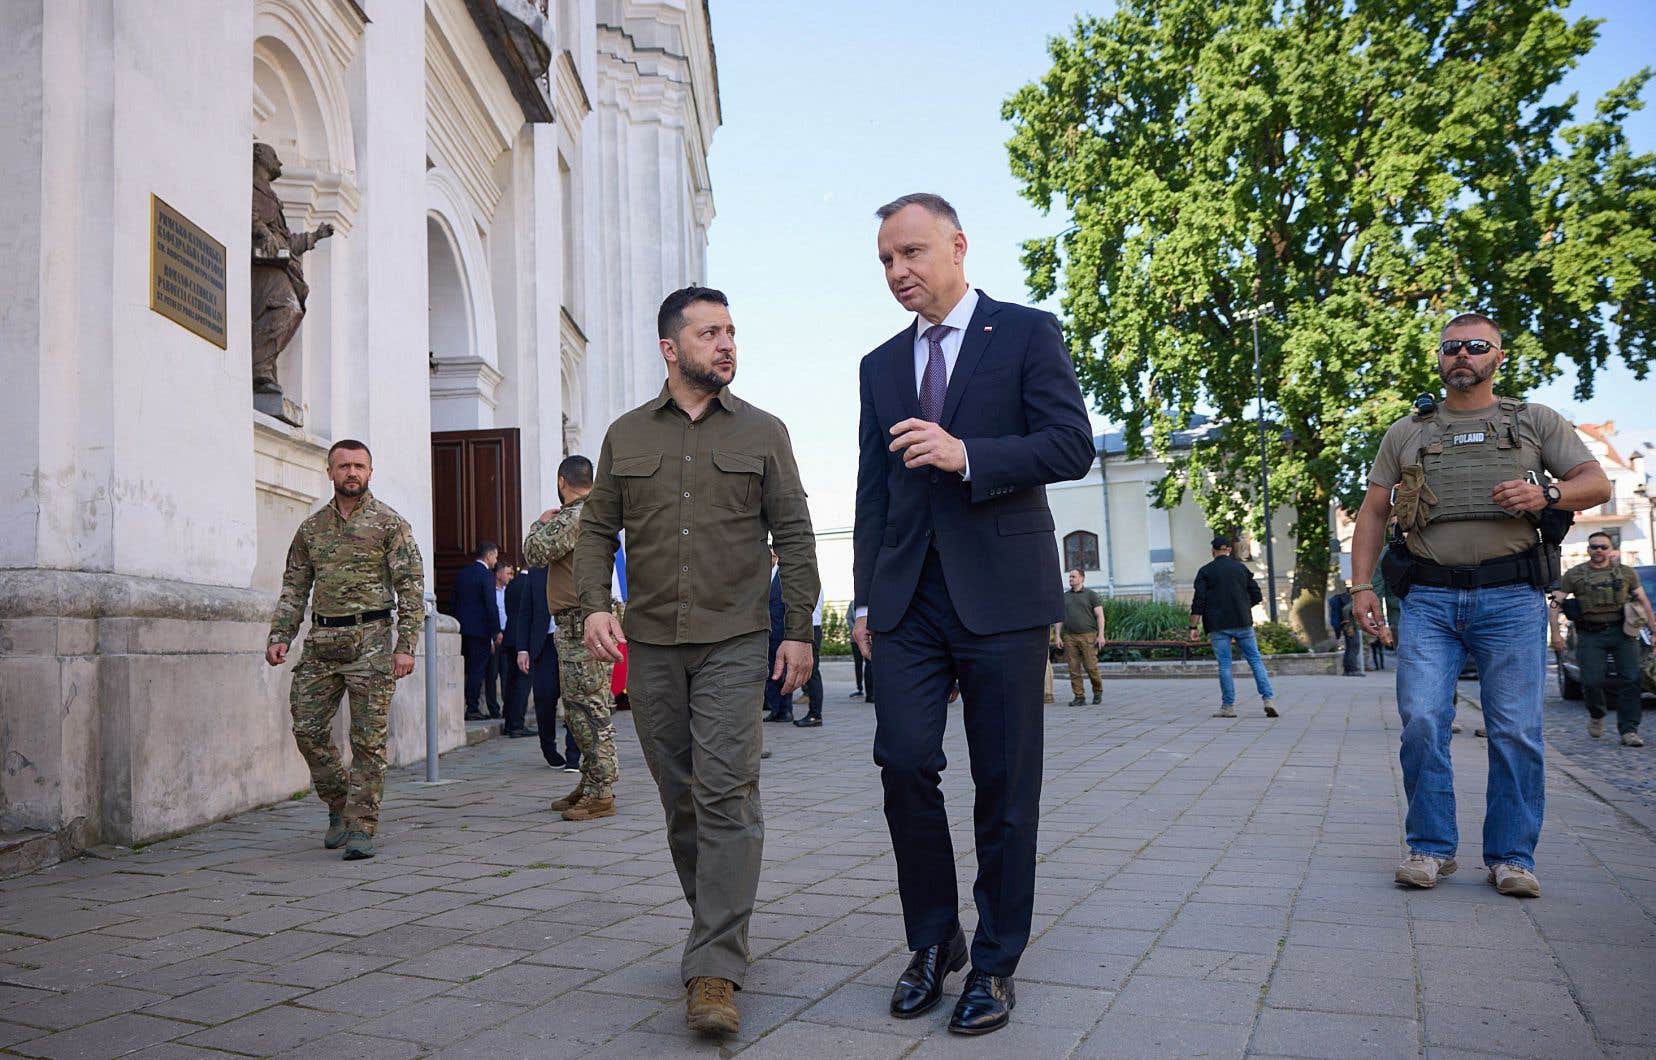 Le président ukrainien, Volodymyr Zelensky (au centre à gauche) marche aux côtés du président polonais, Andrzej Duda, lors d’une rencontre entre les deux hommes en juillet dernier, à Lutsk, en Ukraine.